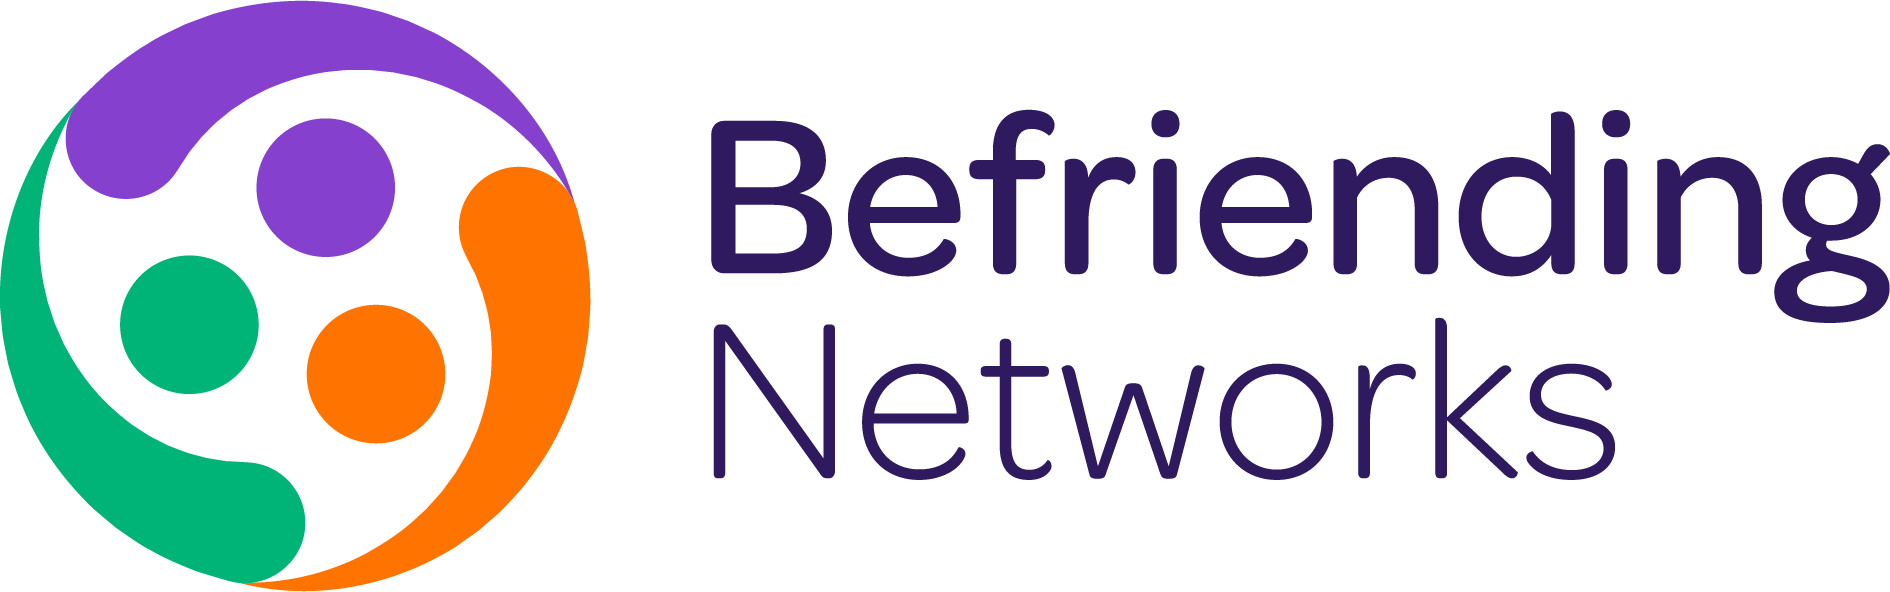 Befriending Networks